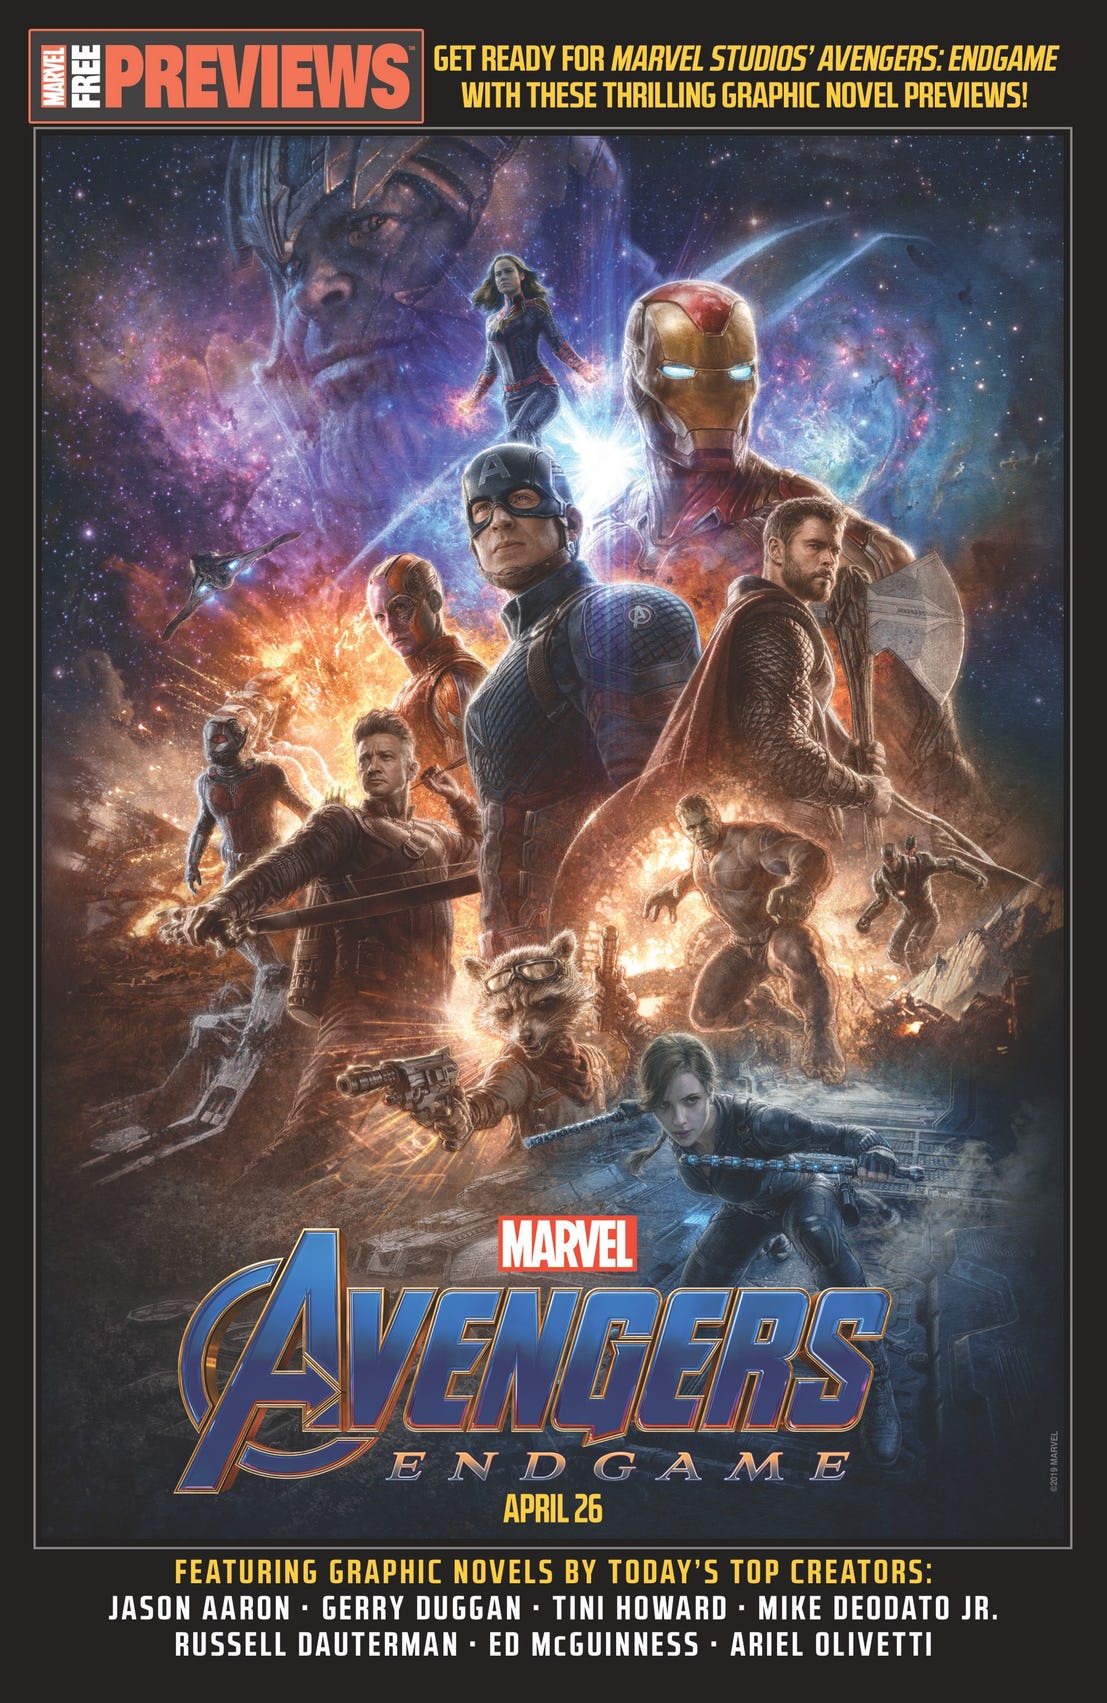 Avengers: Infinity War (2018) & Avengers: Endgame (2019)